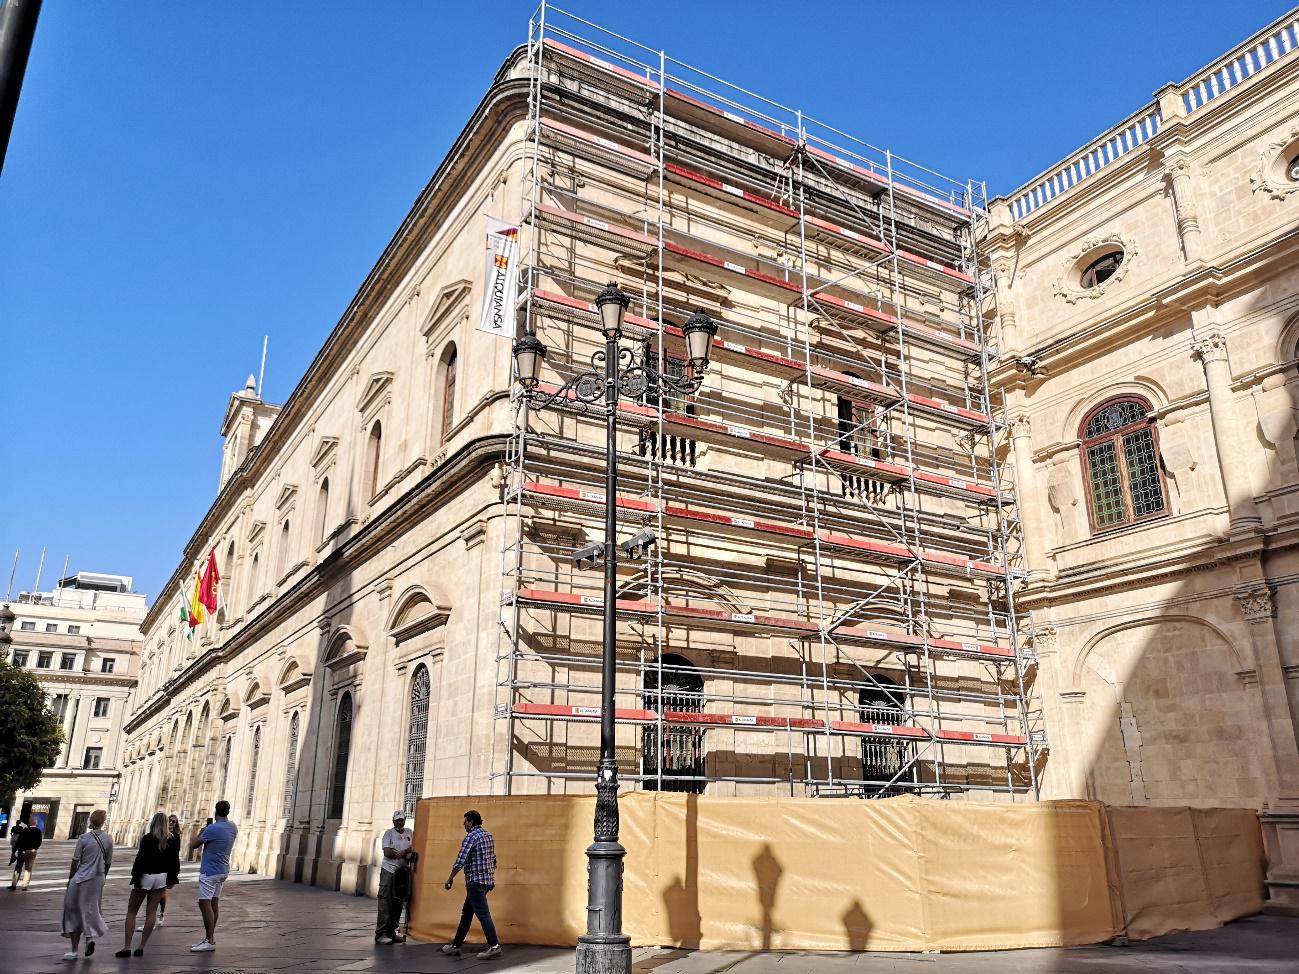 Ayuntamiento de Sevilla, última fase de la restauración de sus fachadas - Alquiansa